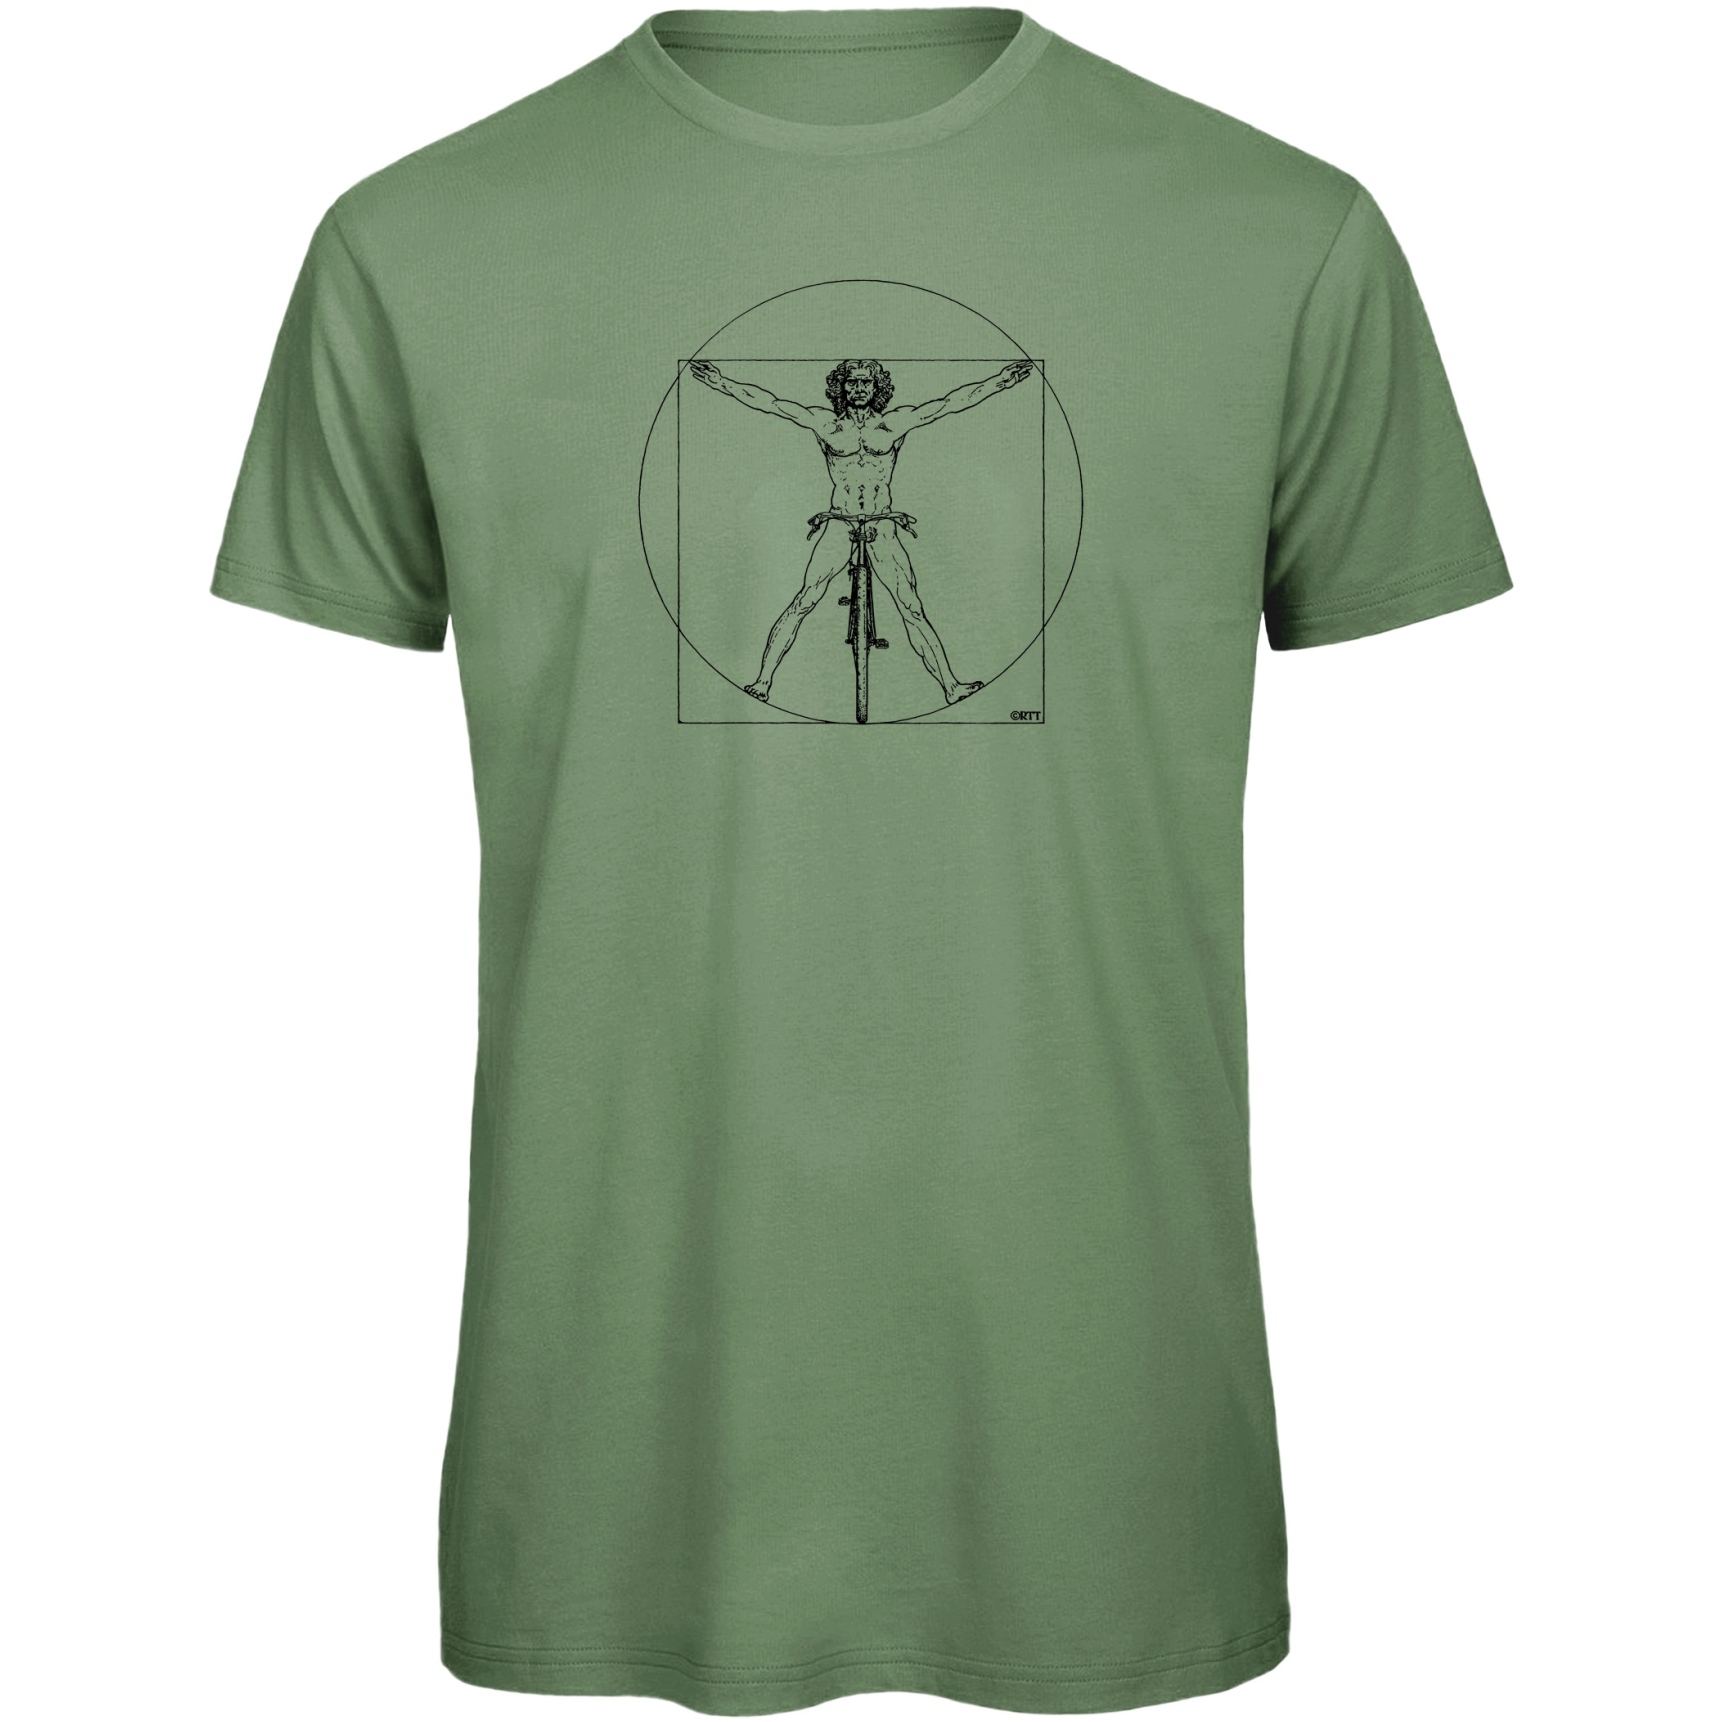 Produktbild von RTTshirts Fahrrad T-Shirt DaVinci - hellgrün